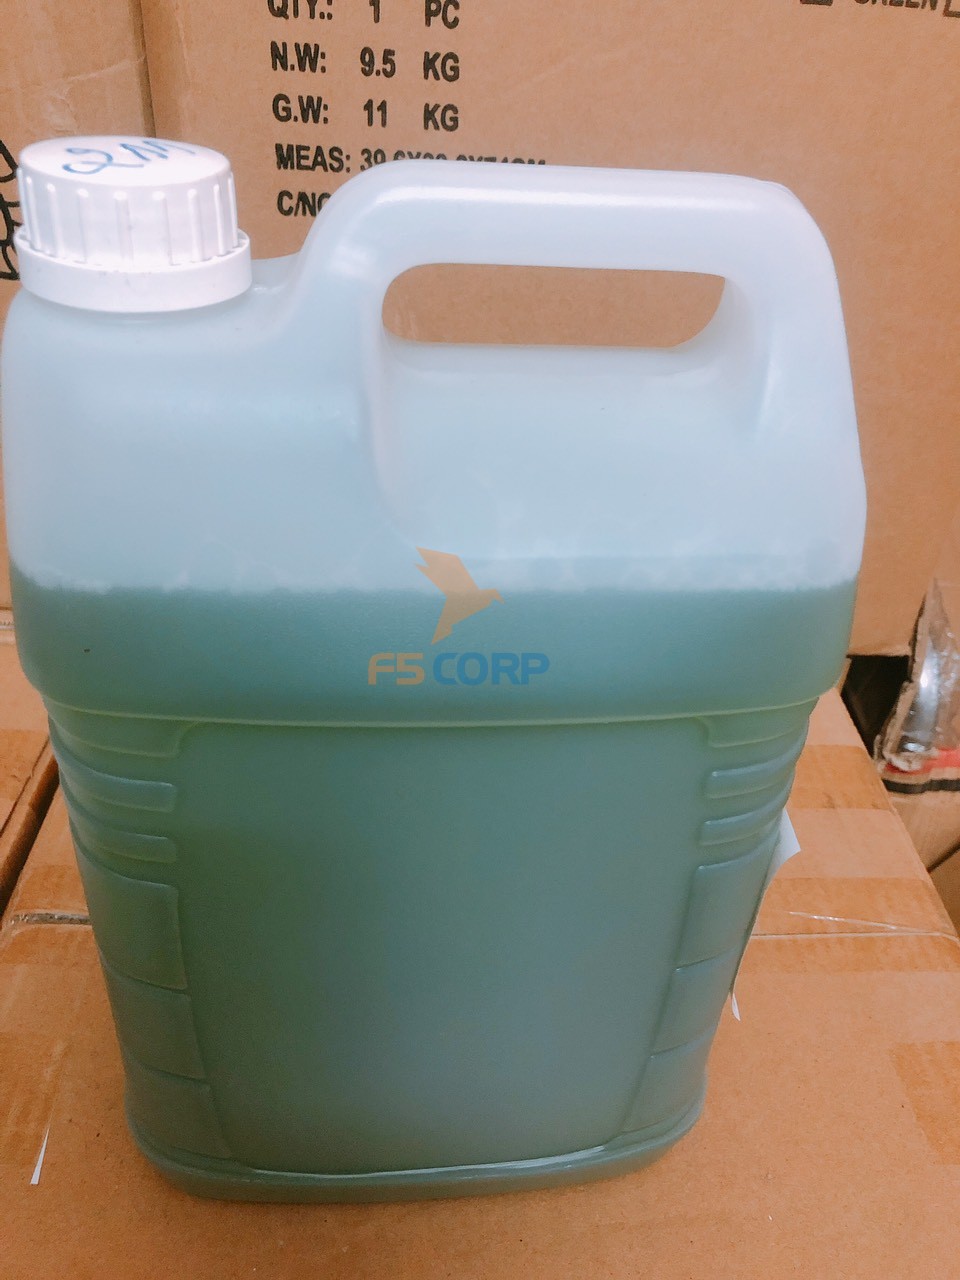 Hóa chất Nước tẩy rửa bồn cầu Goodmaid G211-TBC Made in Malaysia can 20L